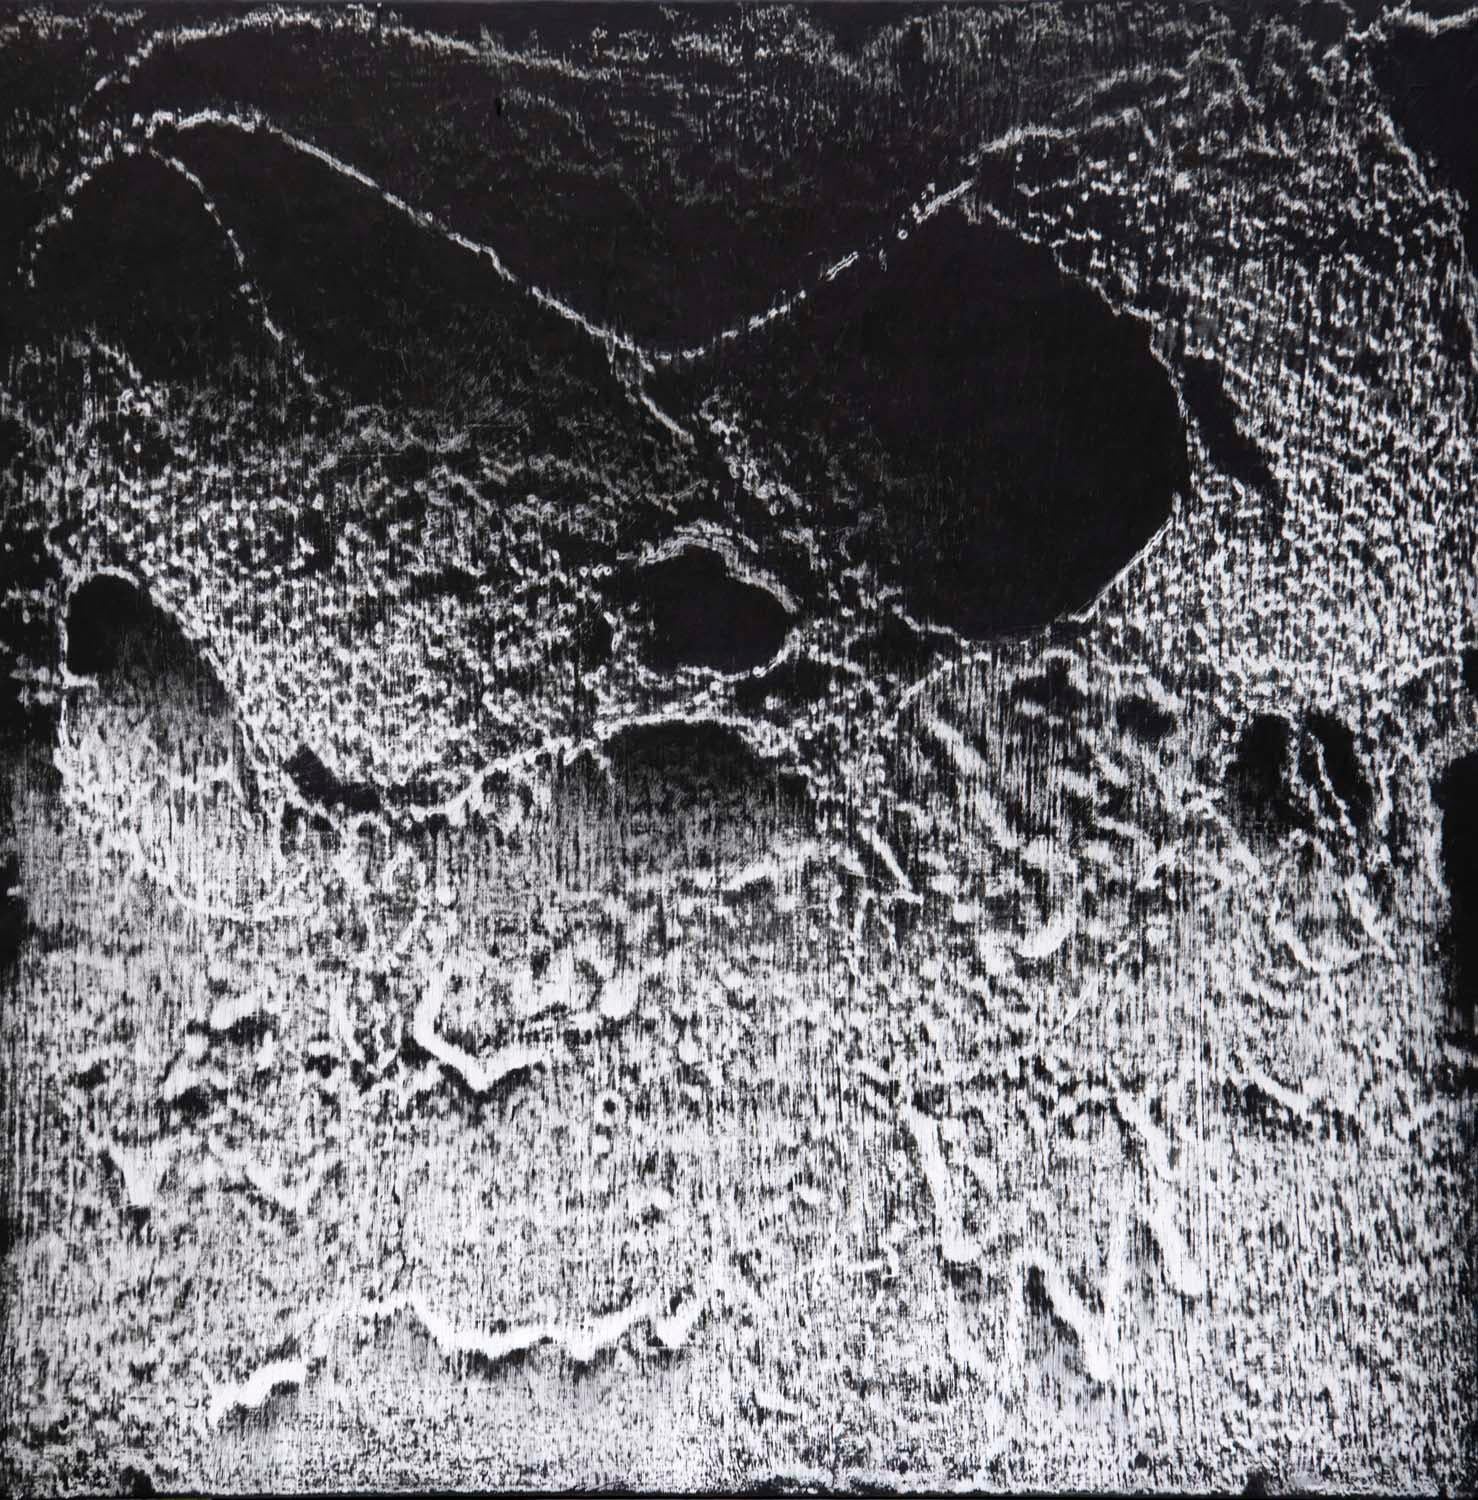 Abstract Painting Bill Maggio - Contemporain abstrait noir et blanc de taille moyenne  Dimension de la peinture à l'huile détaillée